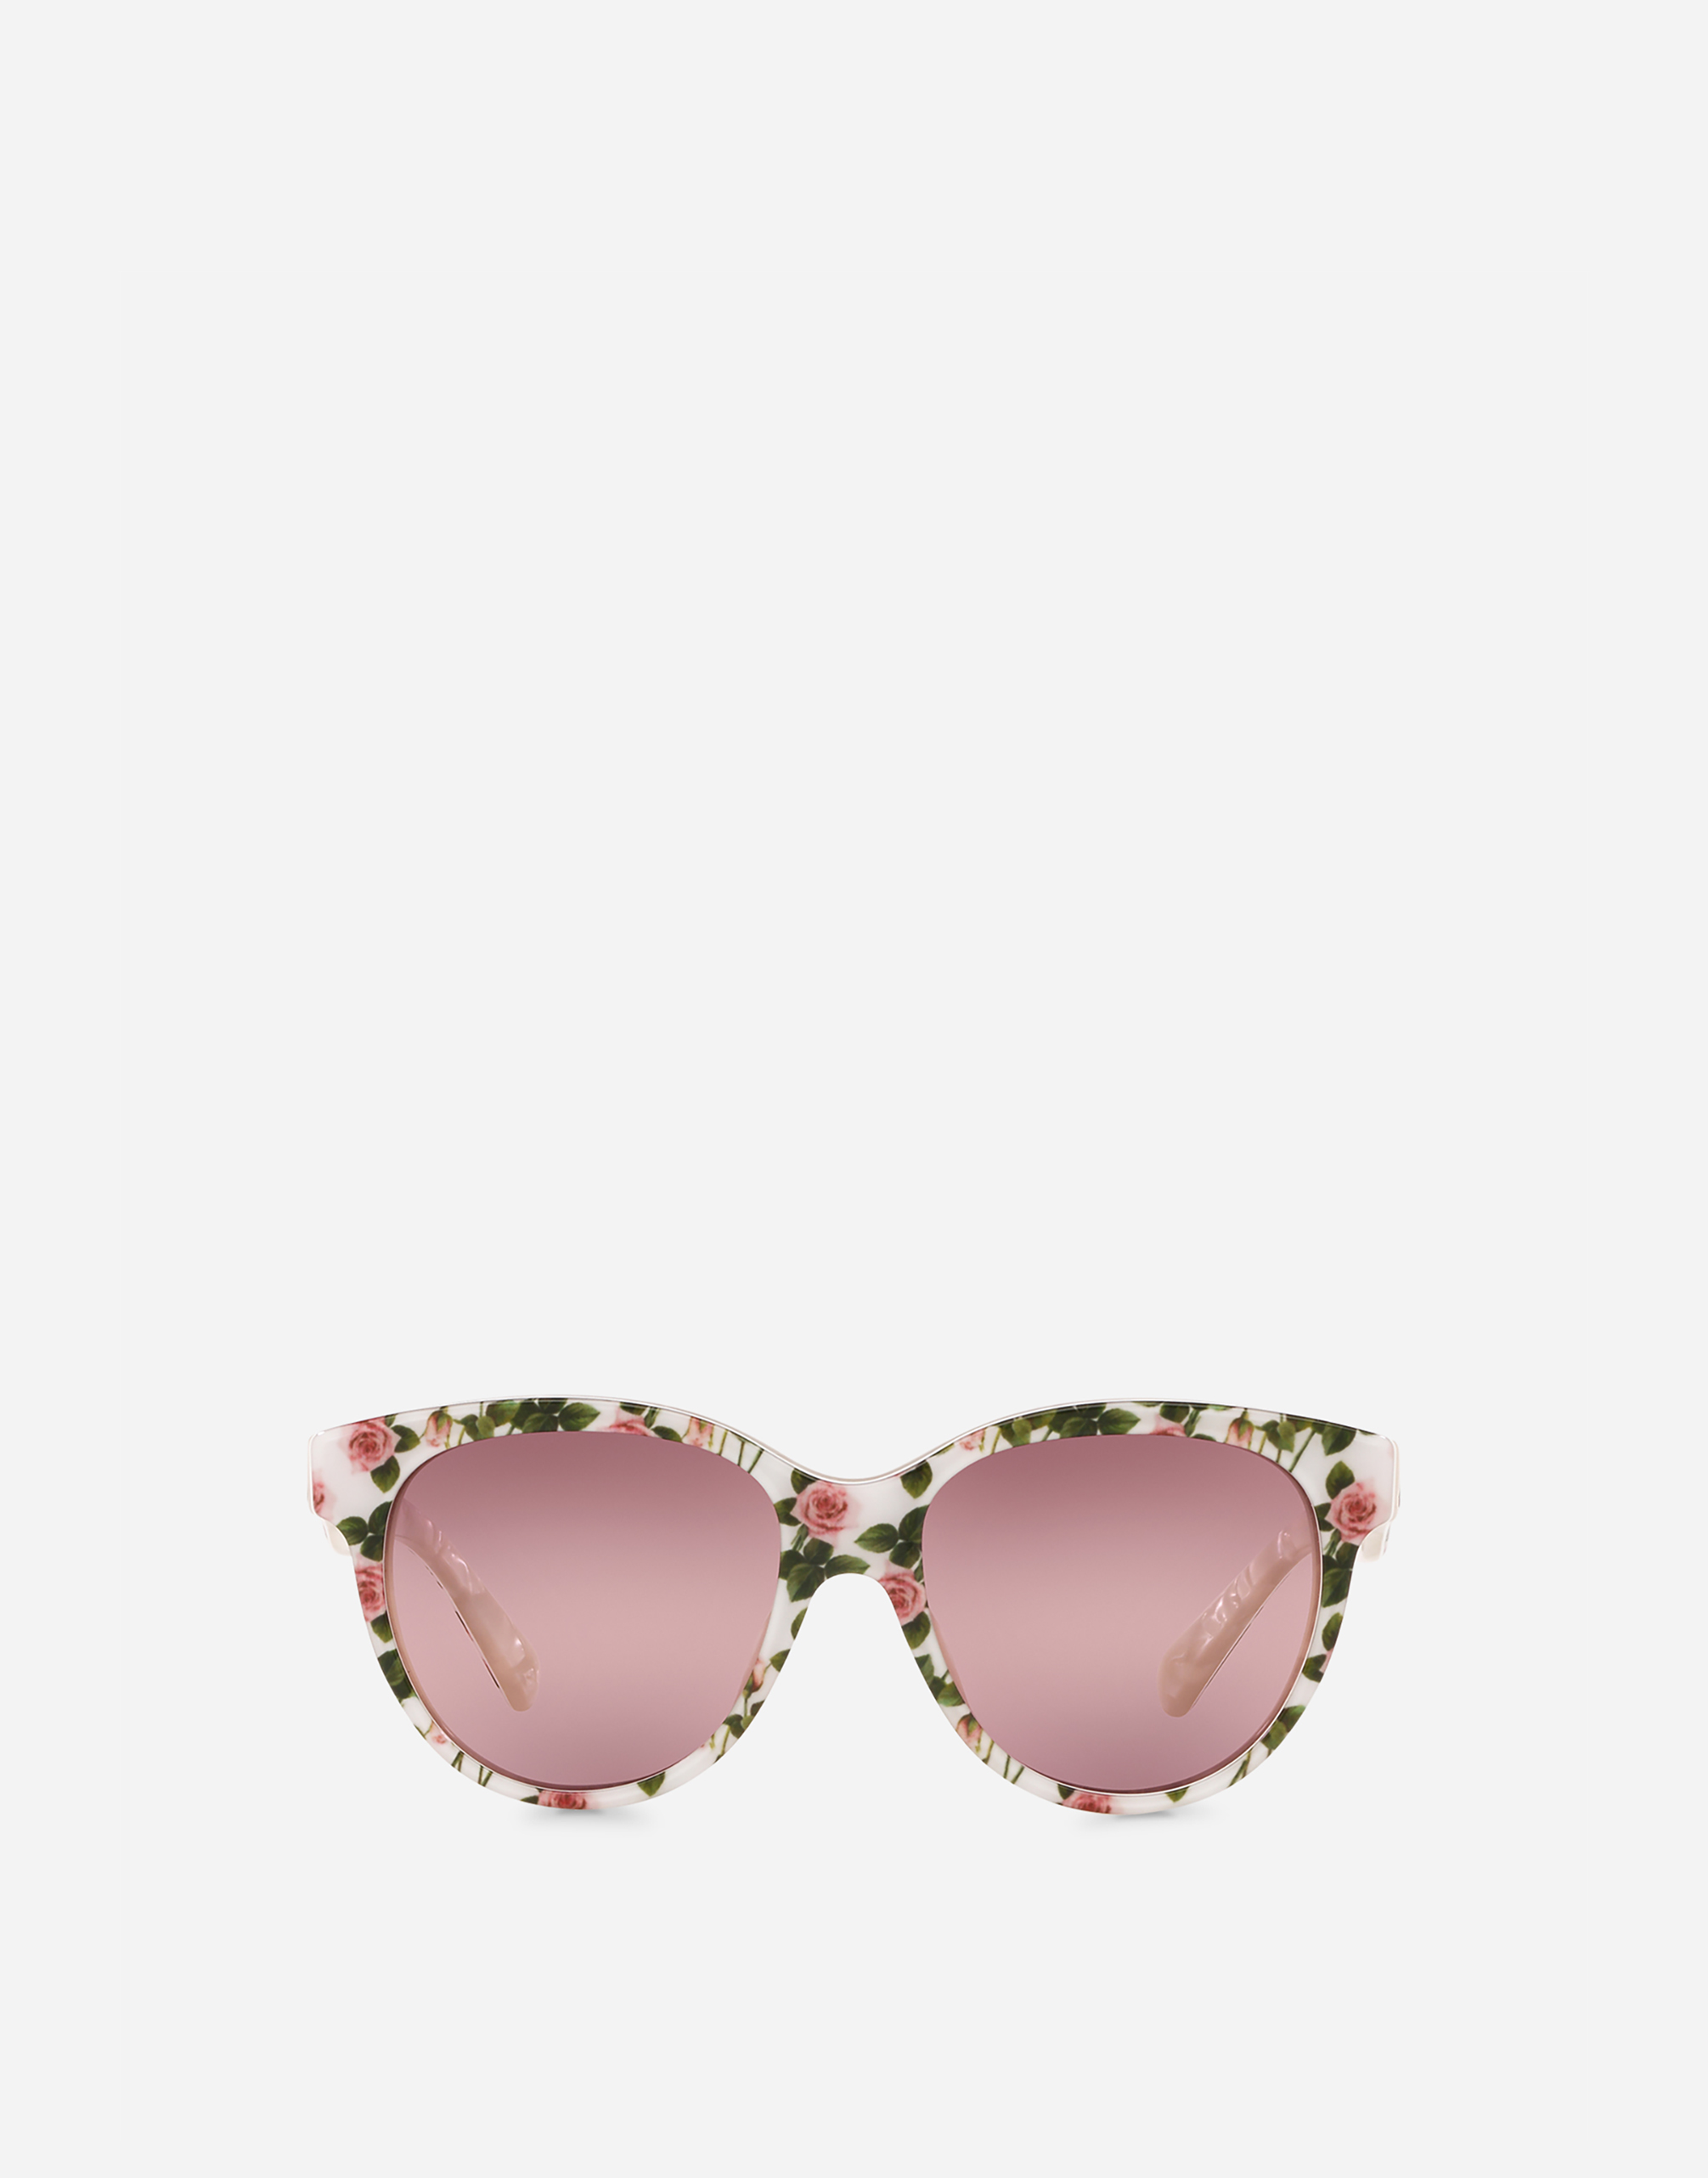 Tropical rose sunglasses in Tropical Rose